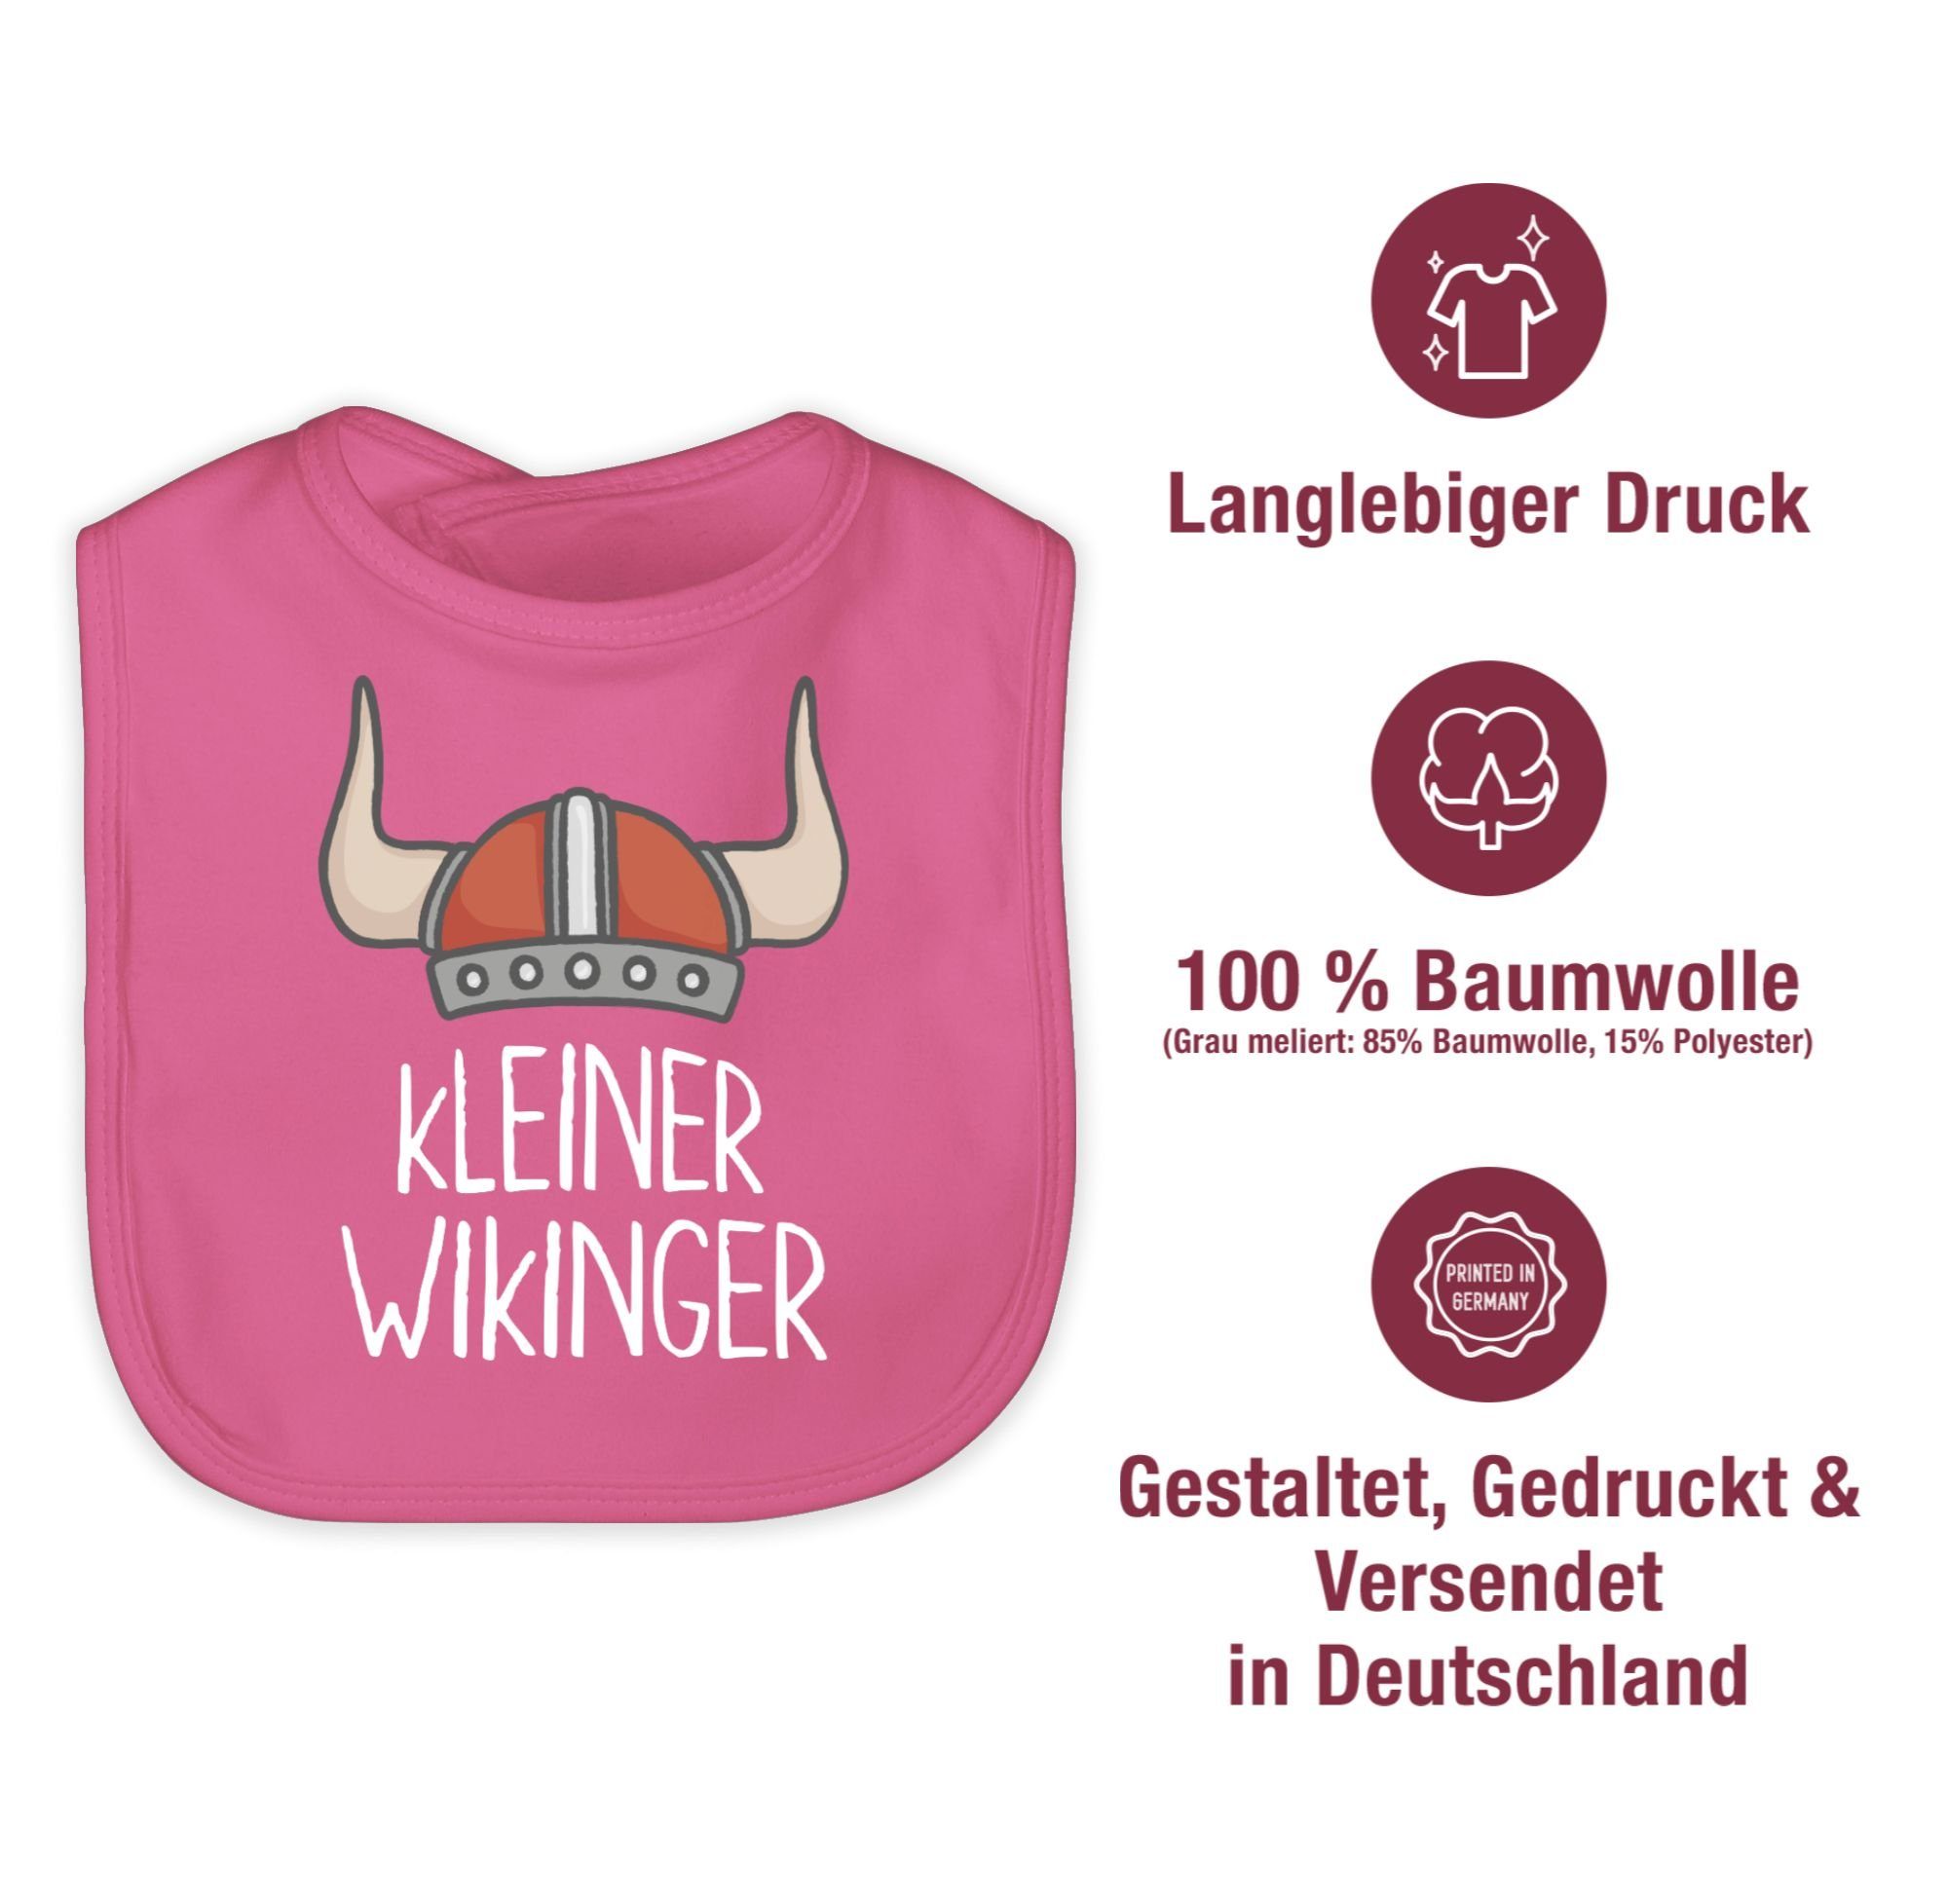 Wikinger Wikinger kleiner Baby Shirtracer weiß, & Pink Walhalla Lätzchen 3